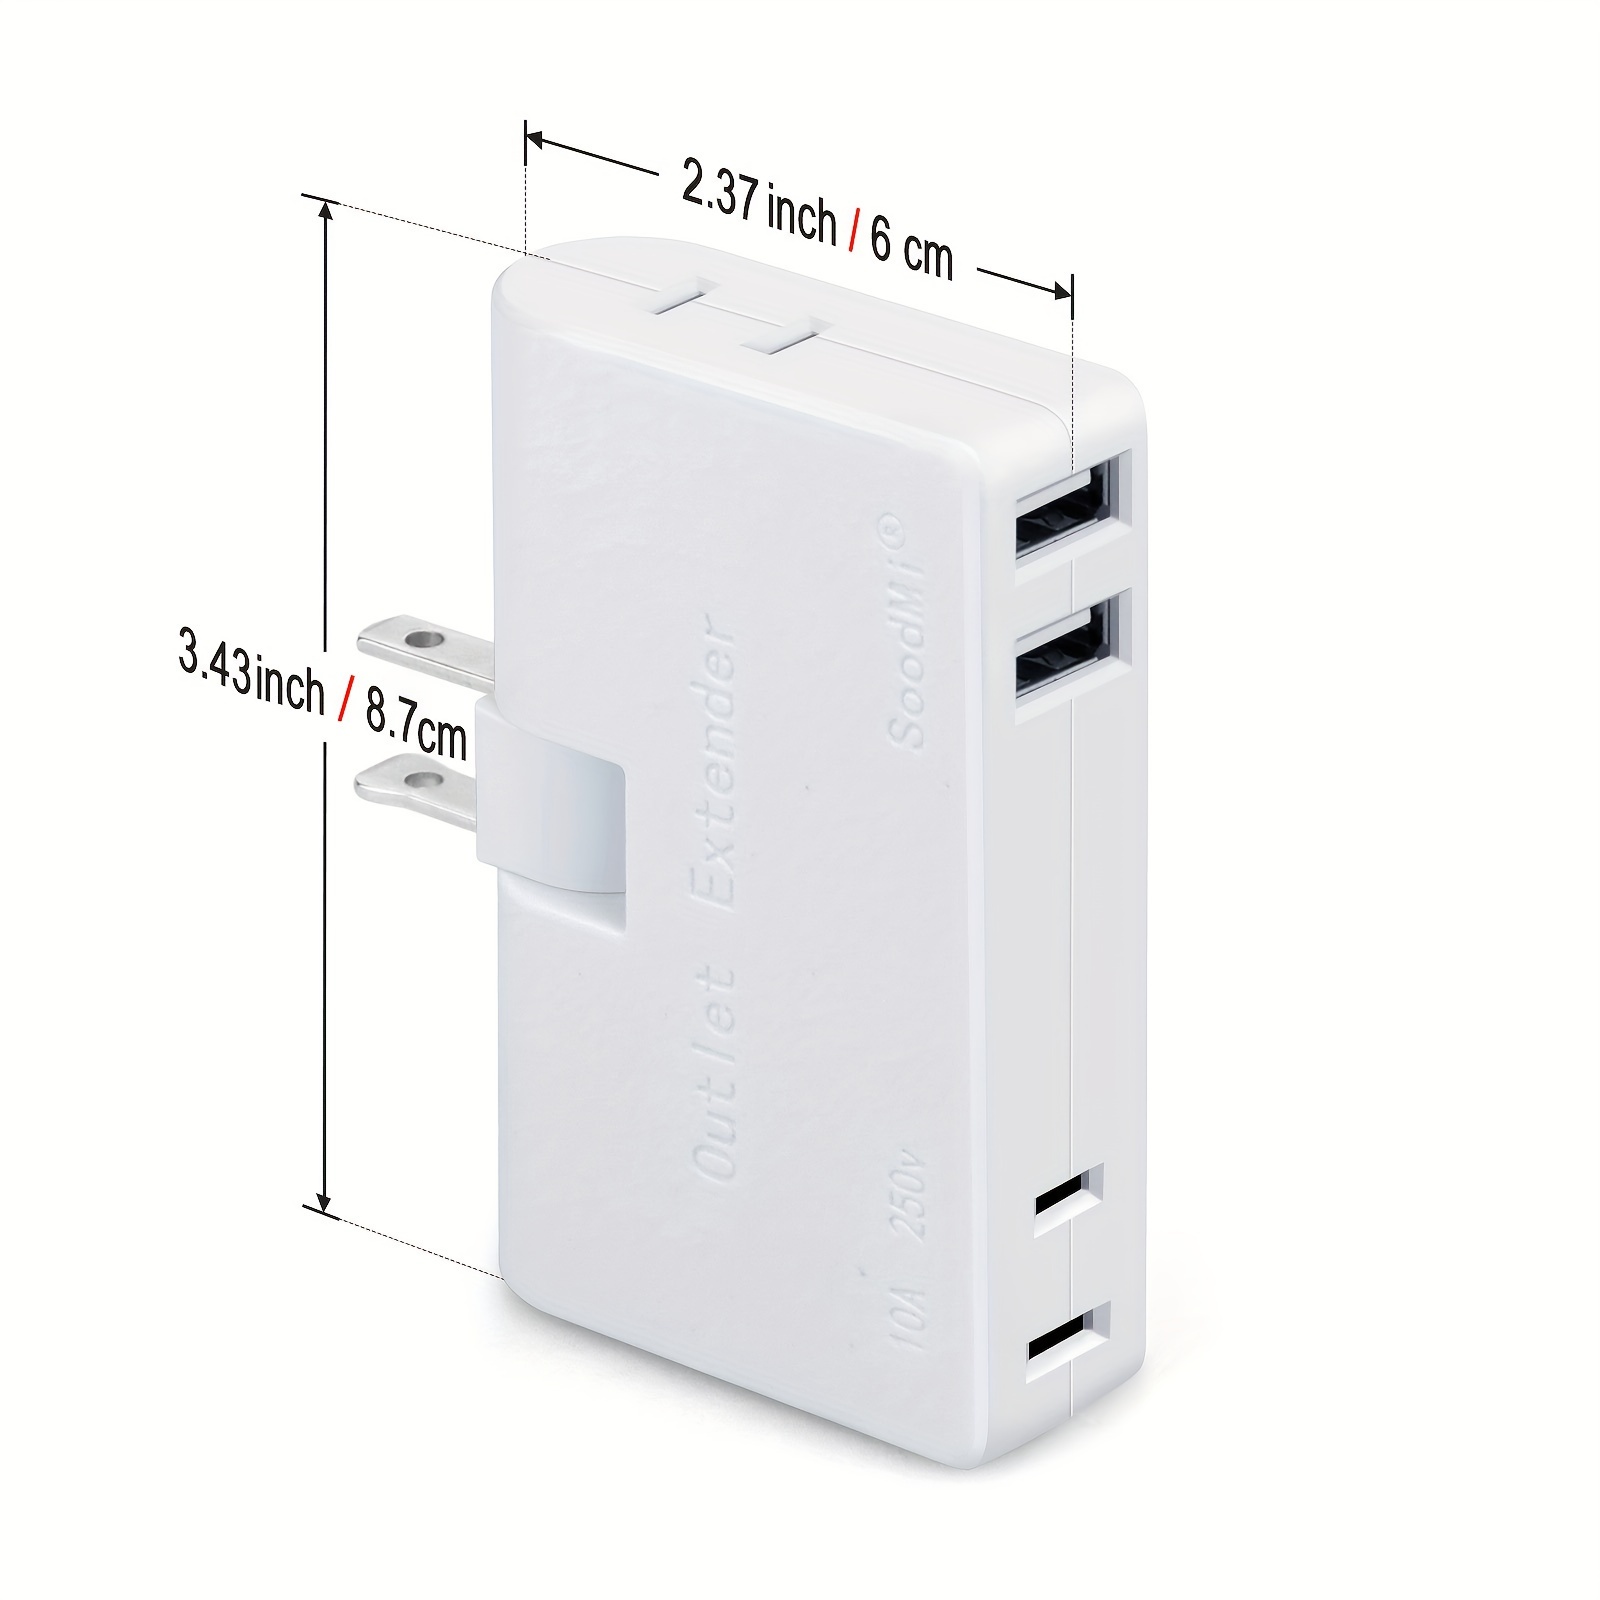  [Paquete de 2] Divisor de enchufes múltiples con USB, extensor  de toma de corriente eléctrica VINTAR 3 con 2 cargadores de pared USB,  expansor de enchufe múltiple para viajes, hogar, oficina